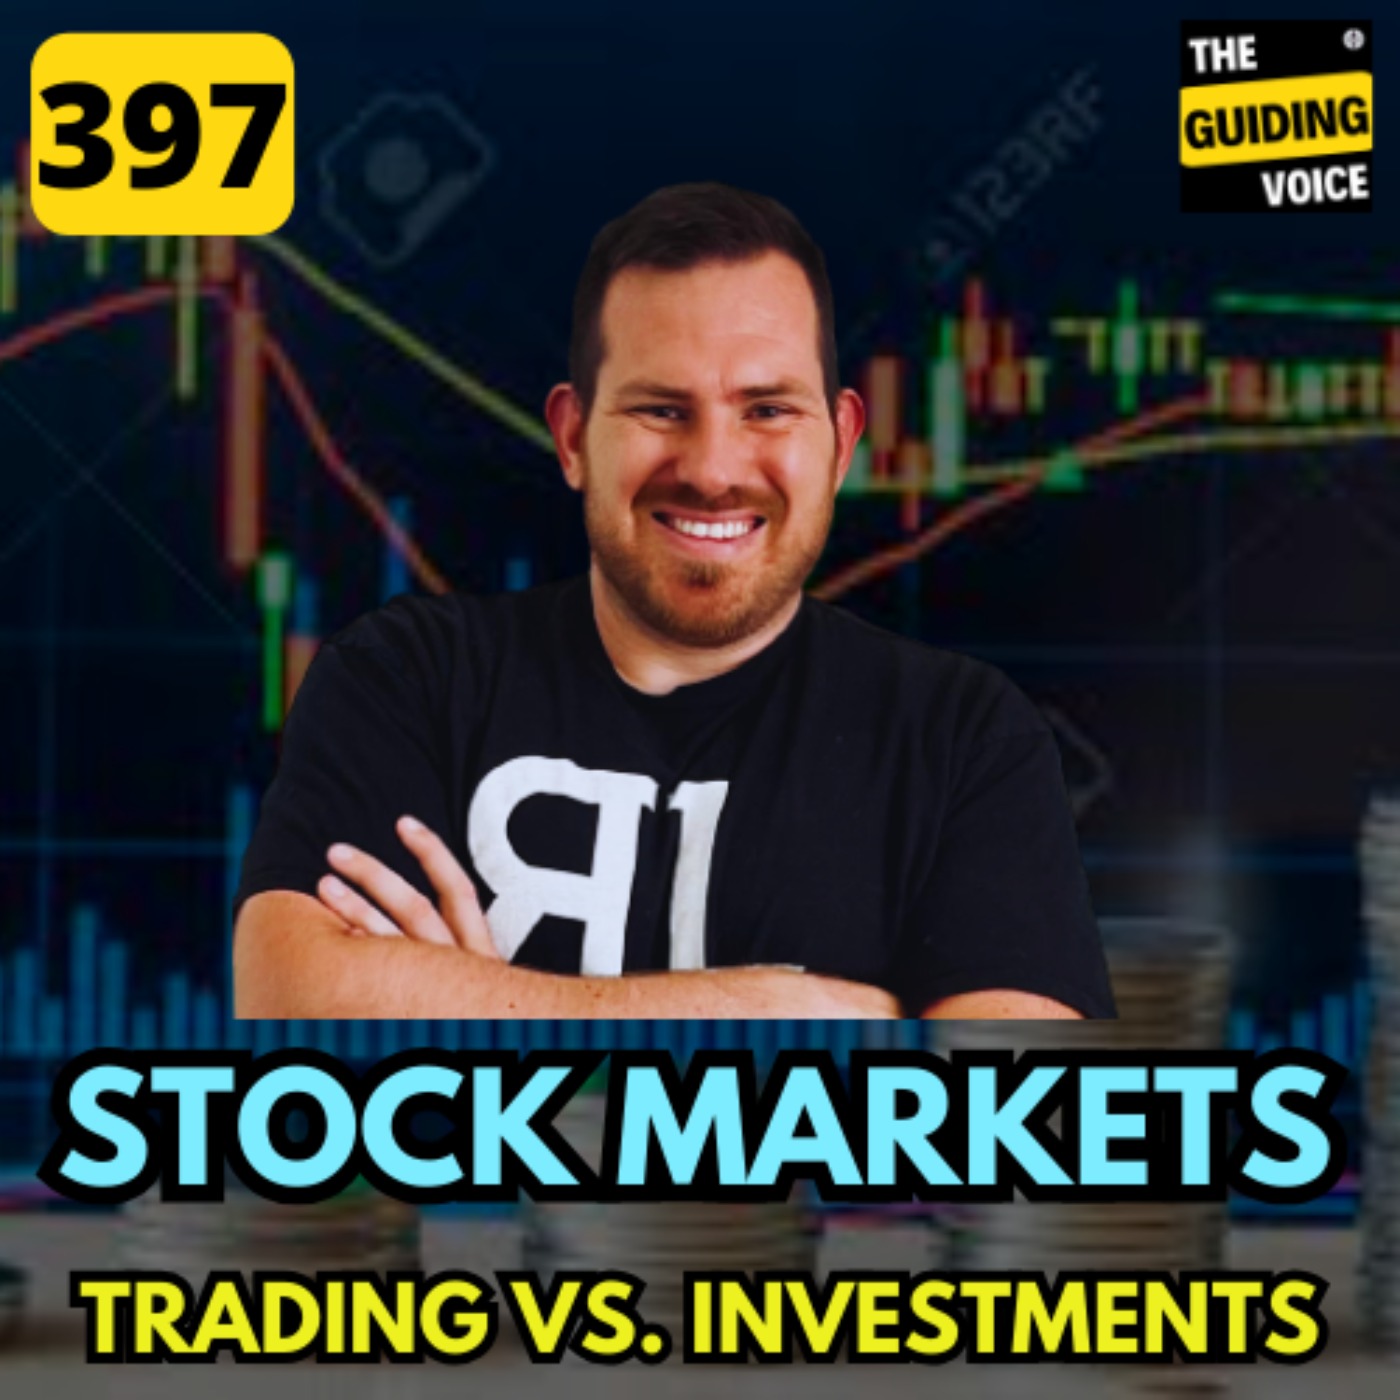 Stock investment vs Trading | Tony Pawlak | #TGV397